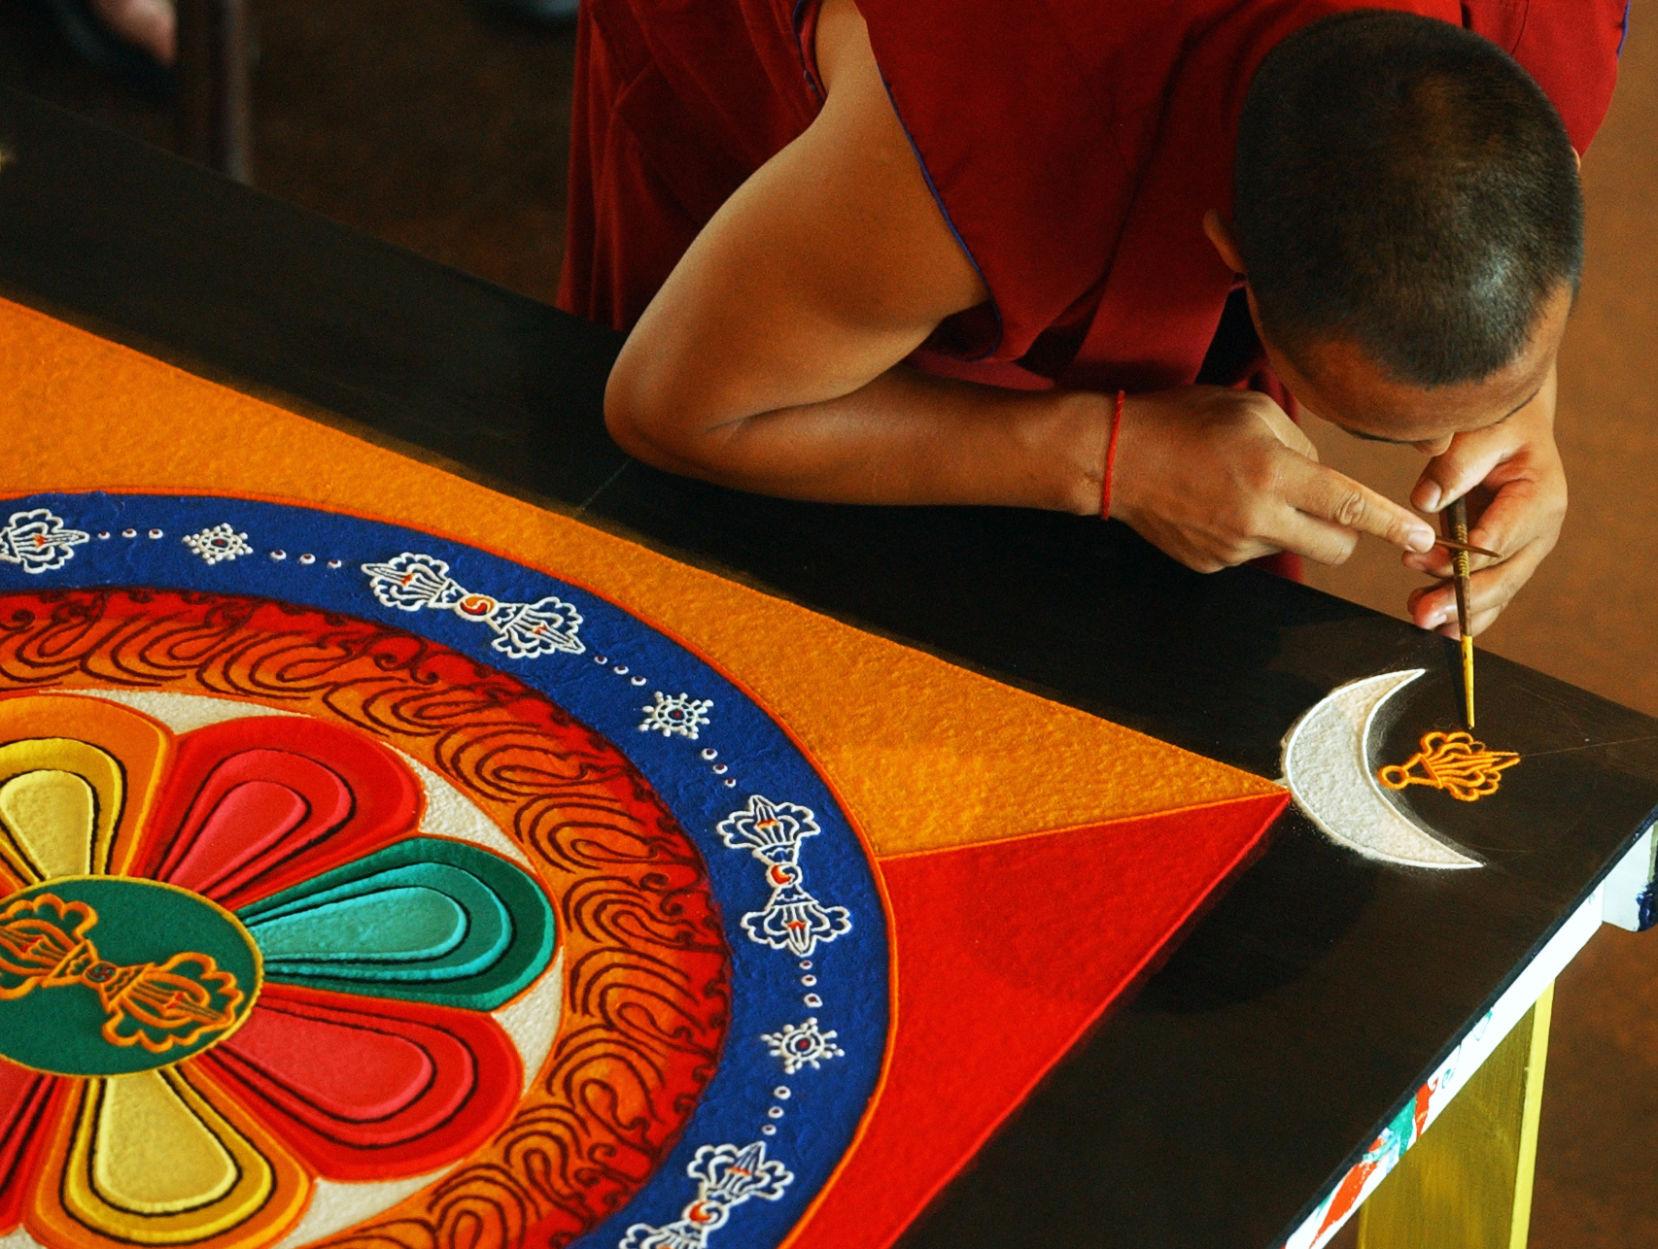 59245dadc0a90.image_ Spoleto | Tibetan Monk Creates Sand Mandala